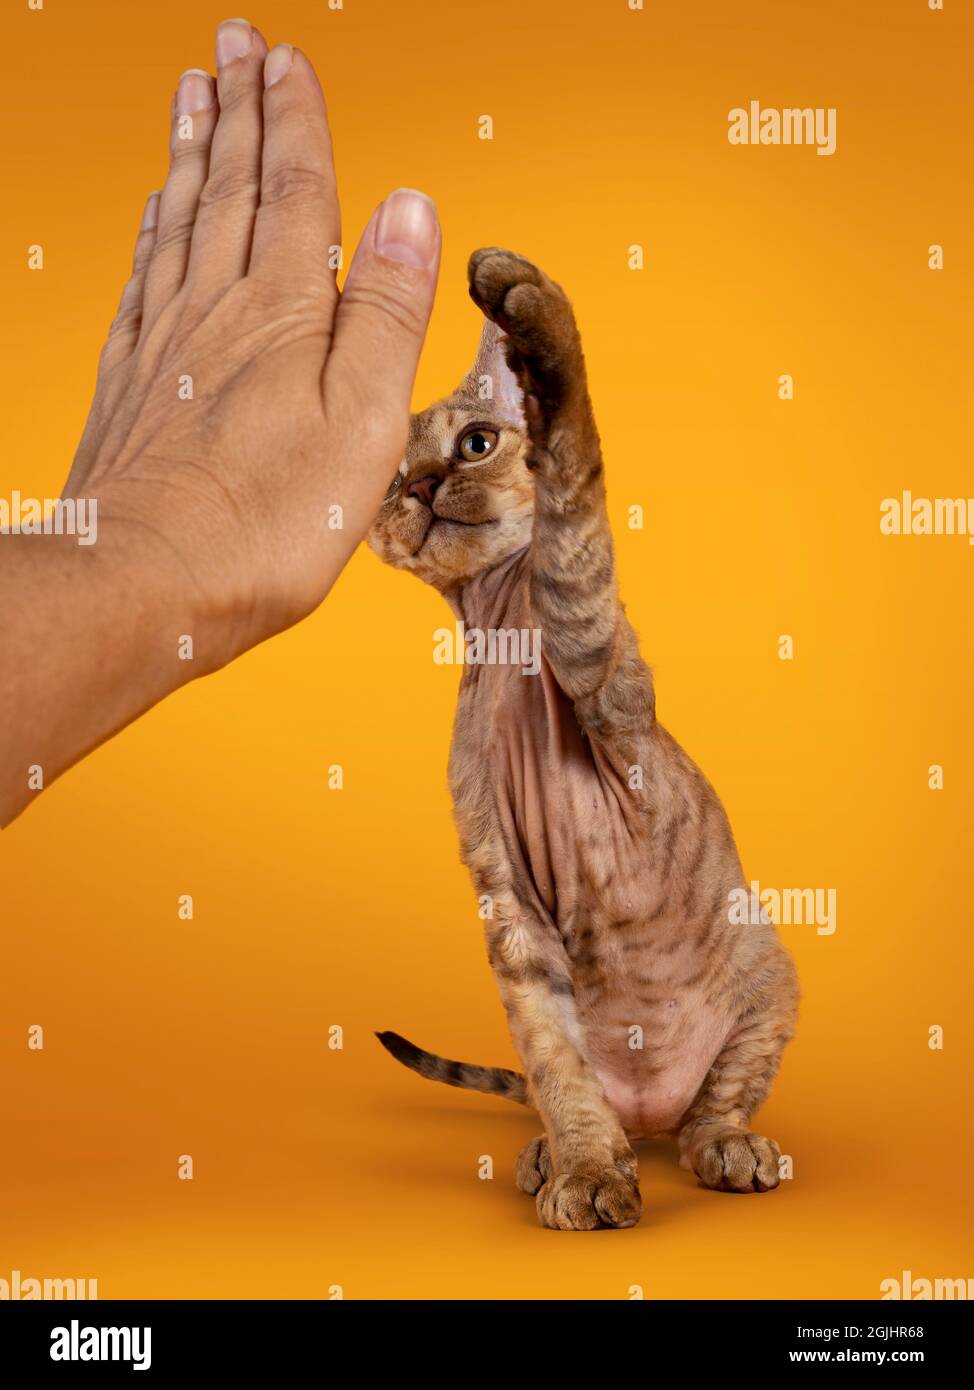 Tabby brun chaud Devon Rex chat chaton, faisant un haut cinq avec la main humaine. Regarder vers un appareil photo avec des yeux dorés. Isolé sur un fond jaune orange Banque D'Images